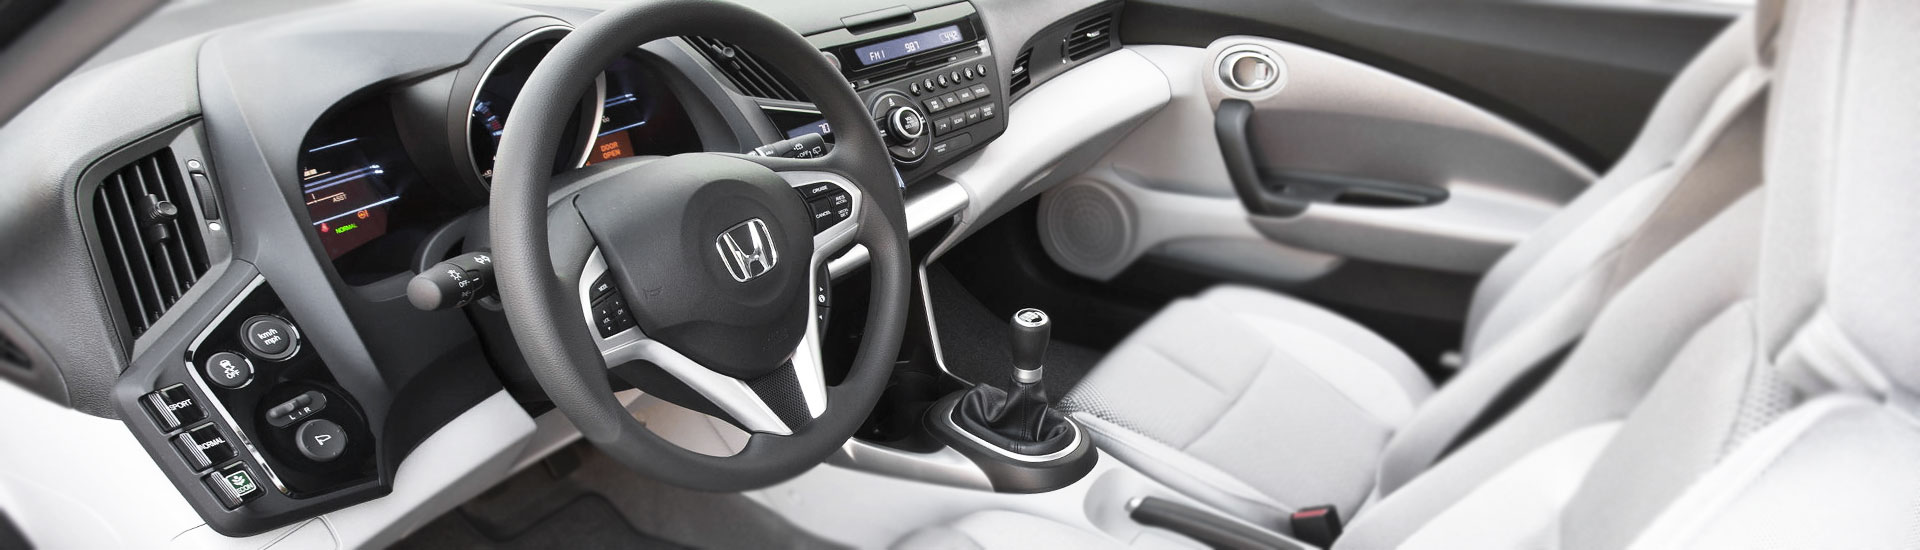 Honda CR-Z Images - Check Interior & Exterior Photos